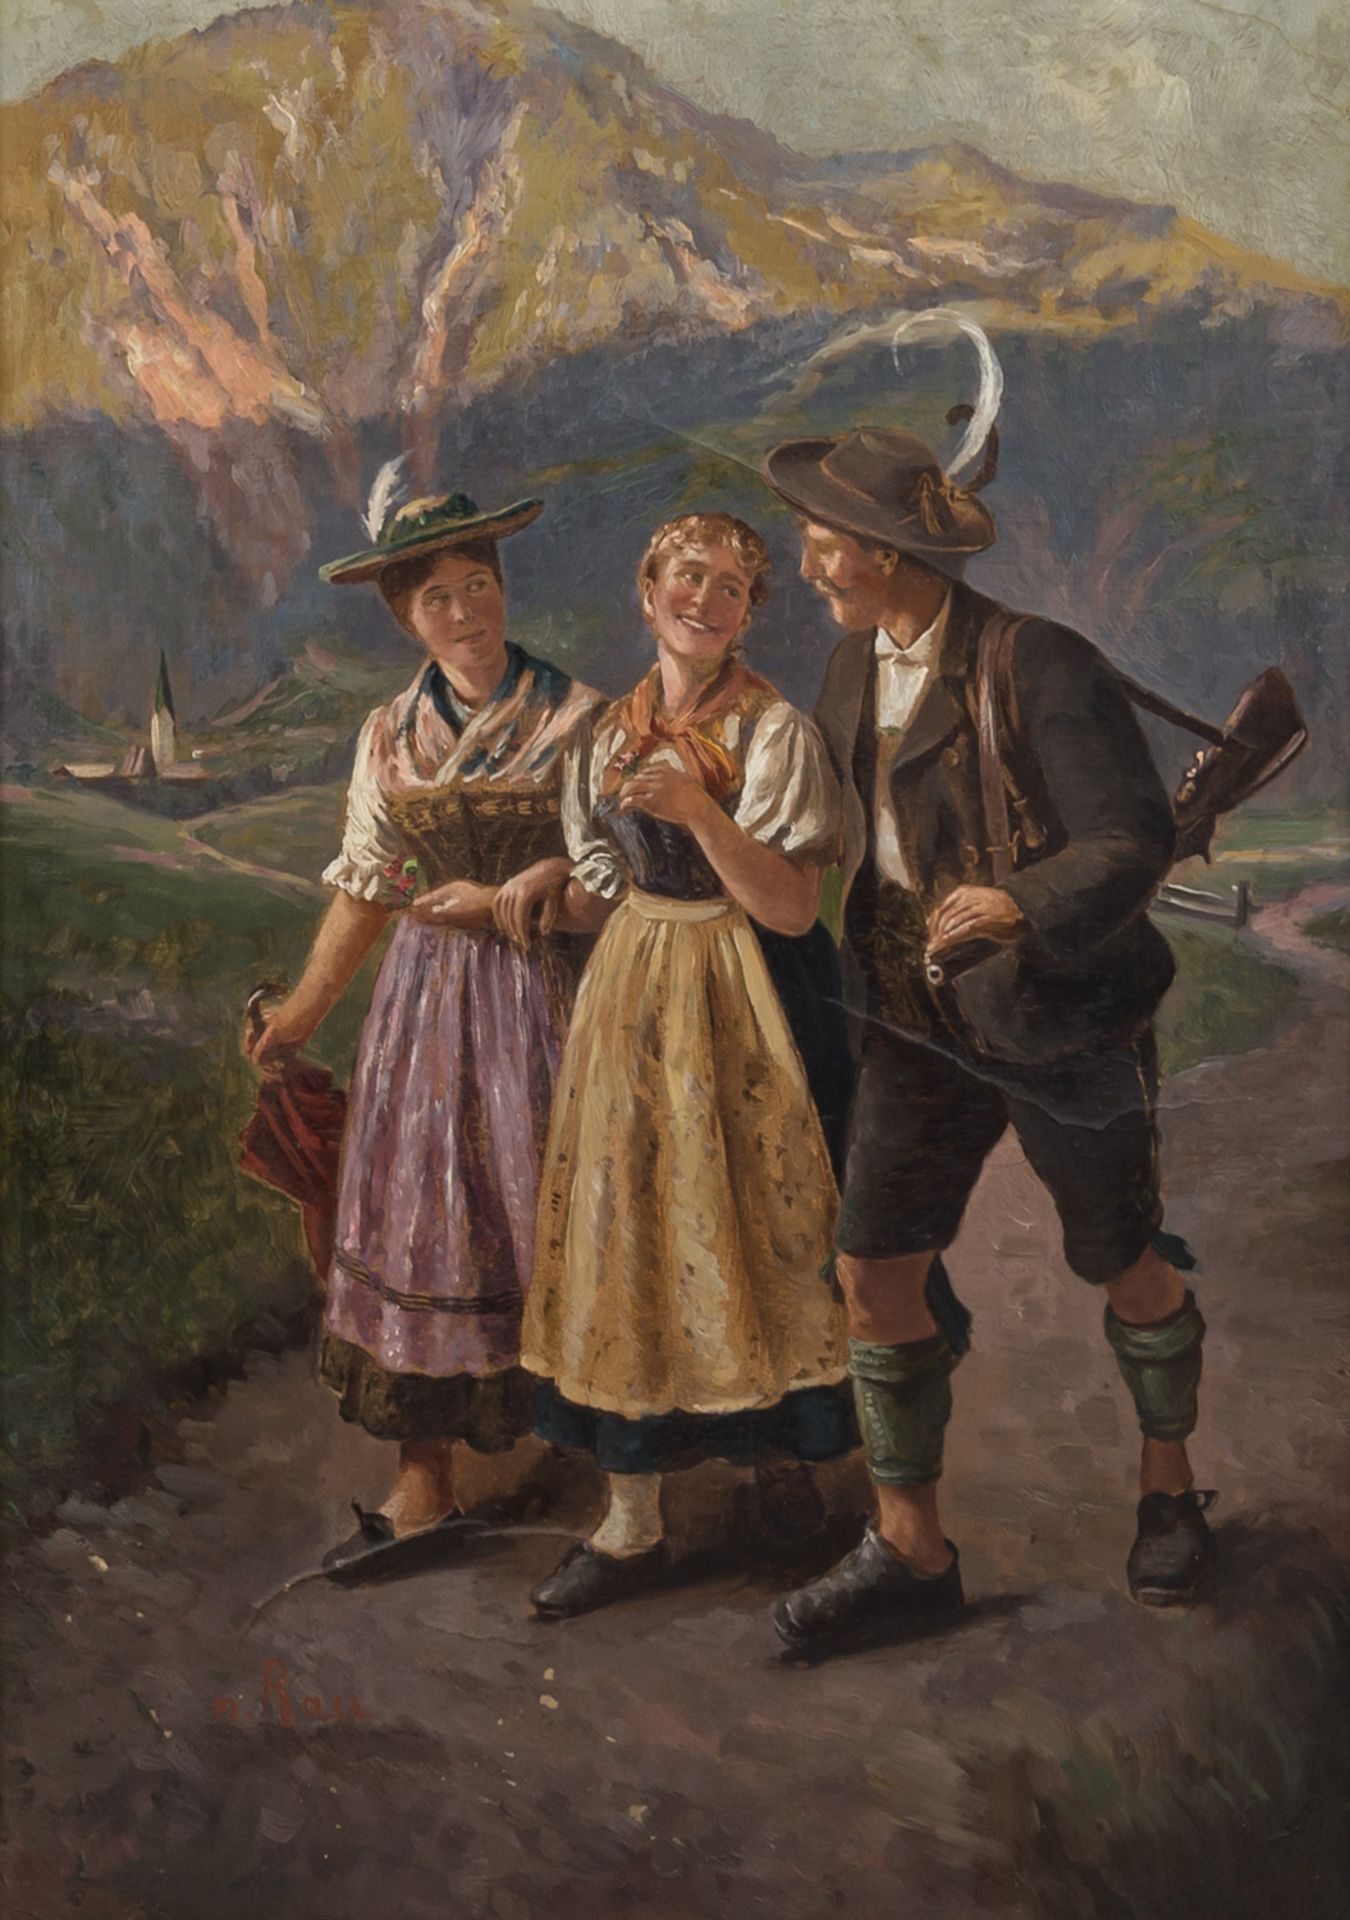 RAU, EMIL (1858-1937) "Jäger mit zwei Damen in Tracht auf Weg" Öl auf Leinwand, sign